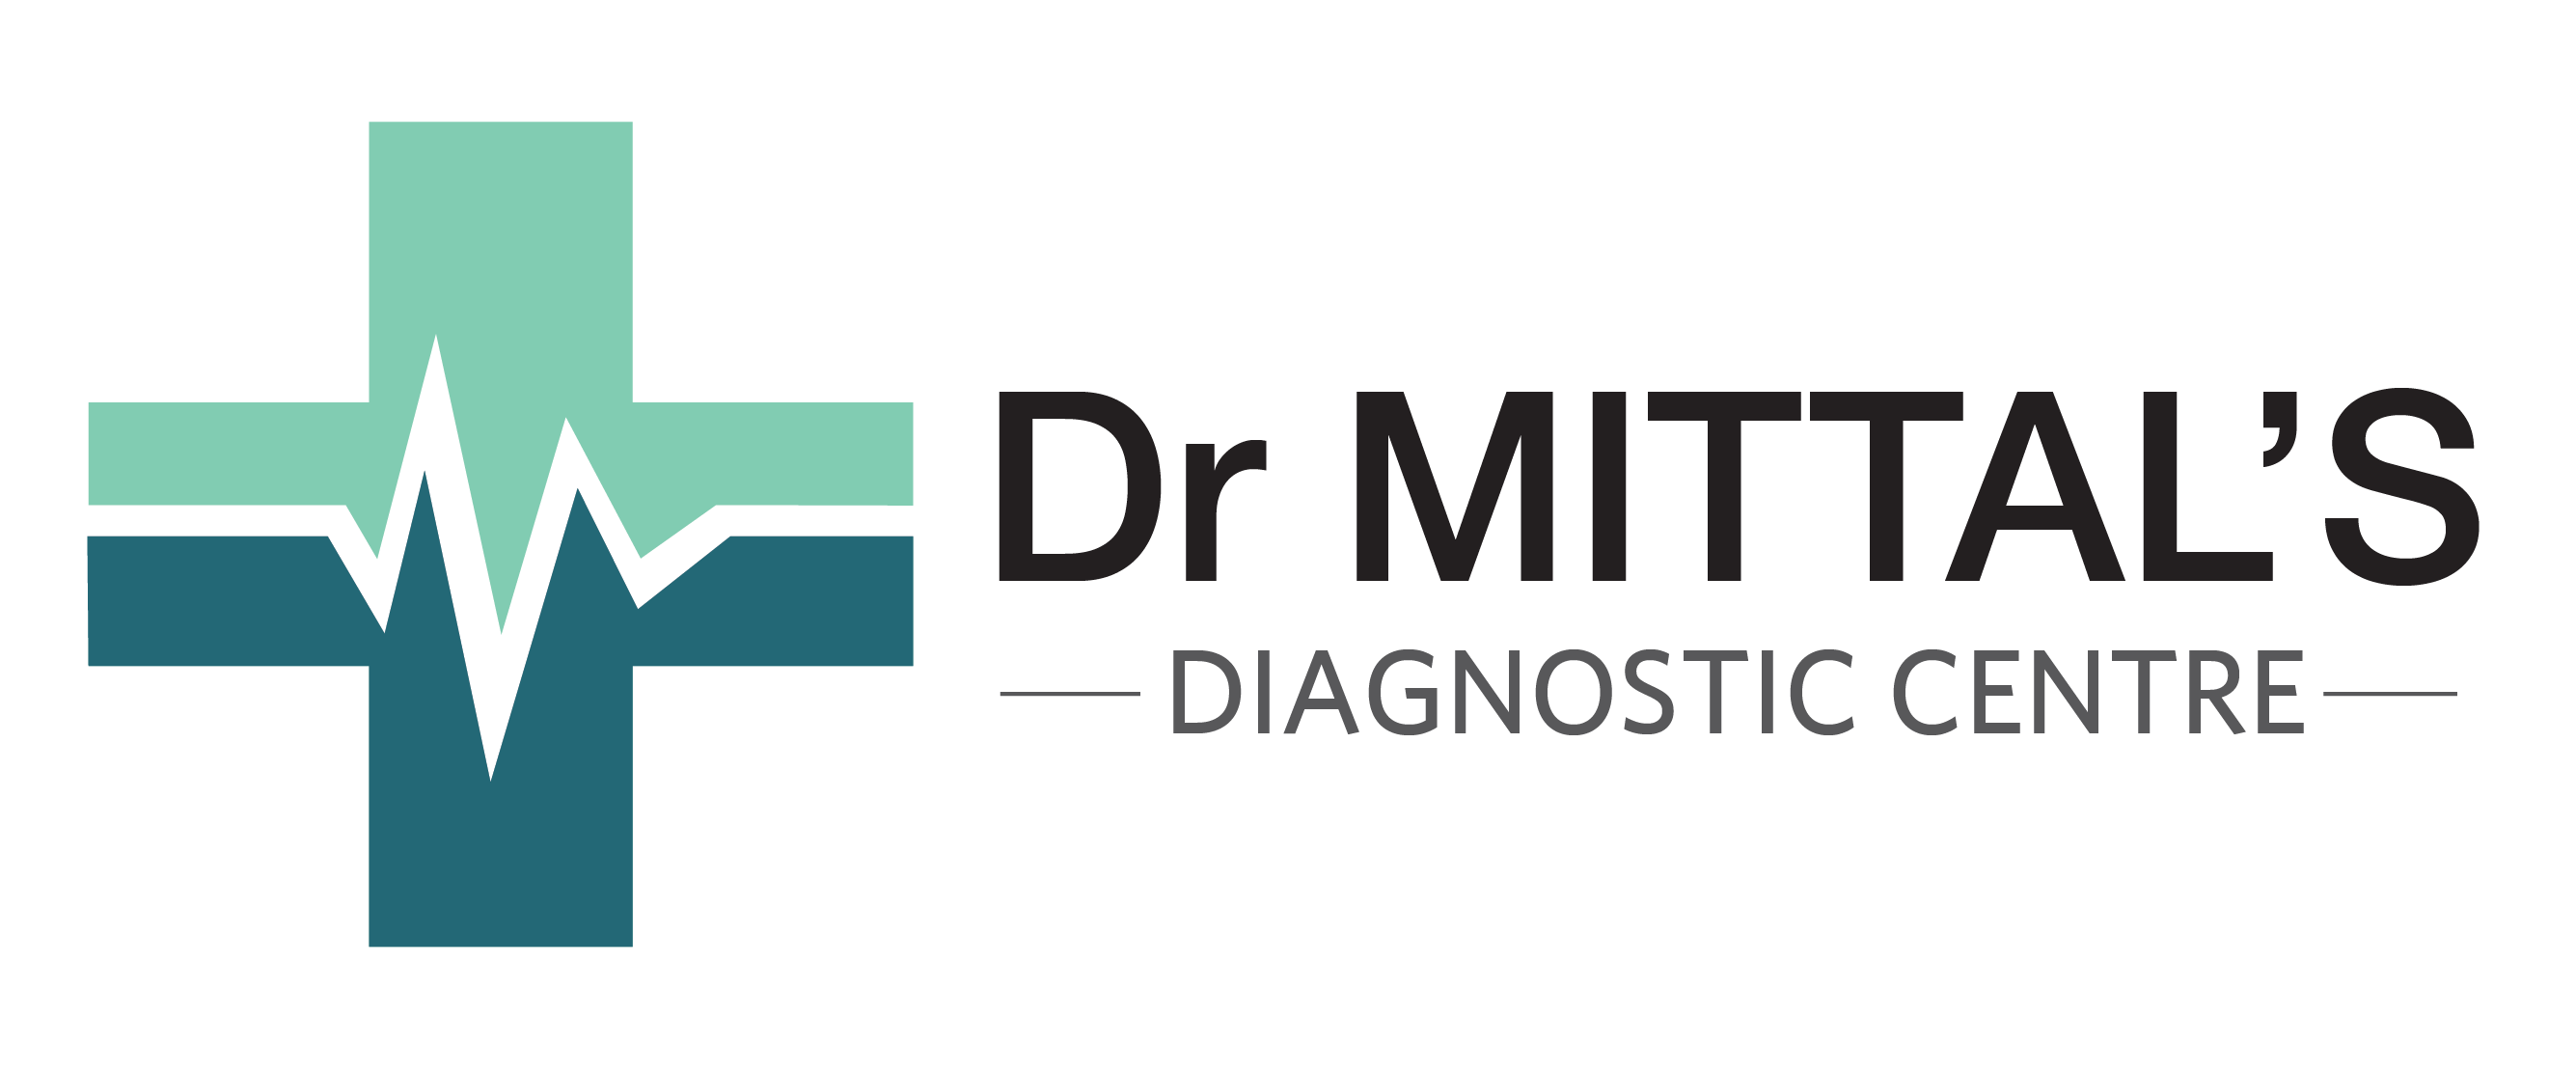 Dr Mittal's Diagnostic Centre